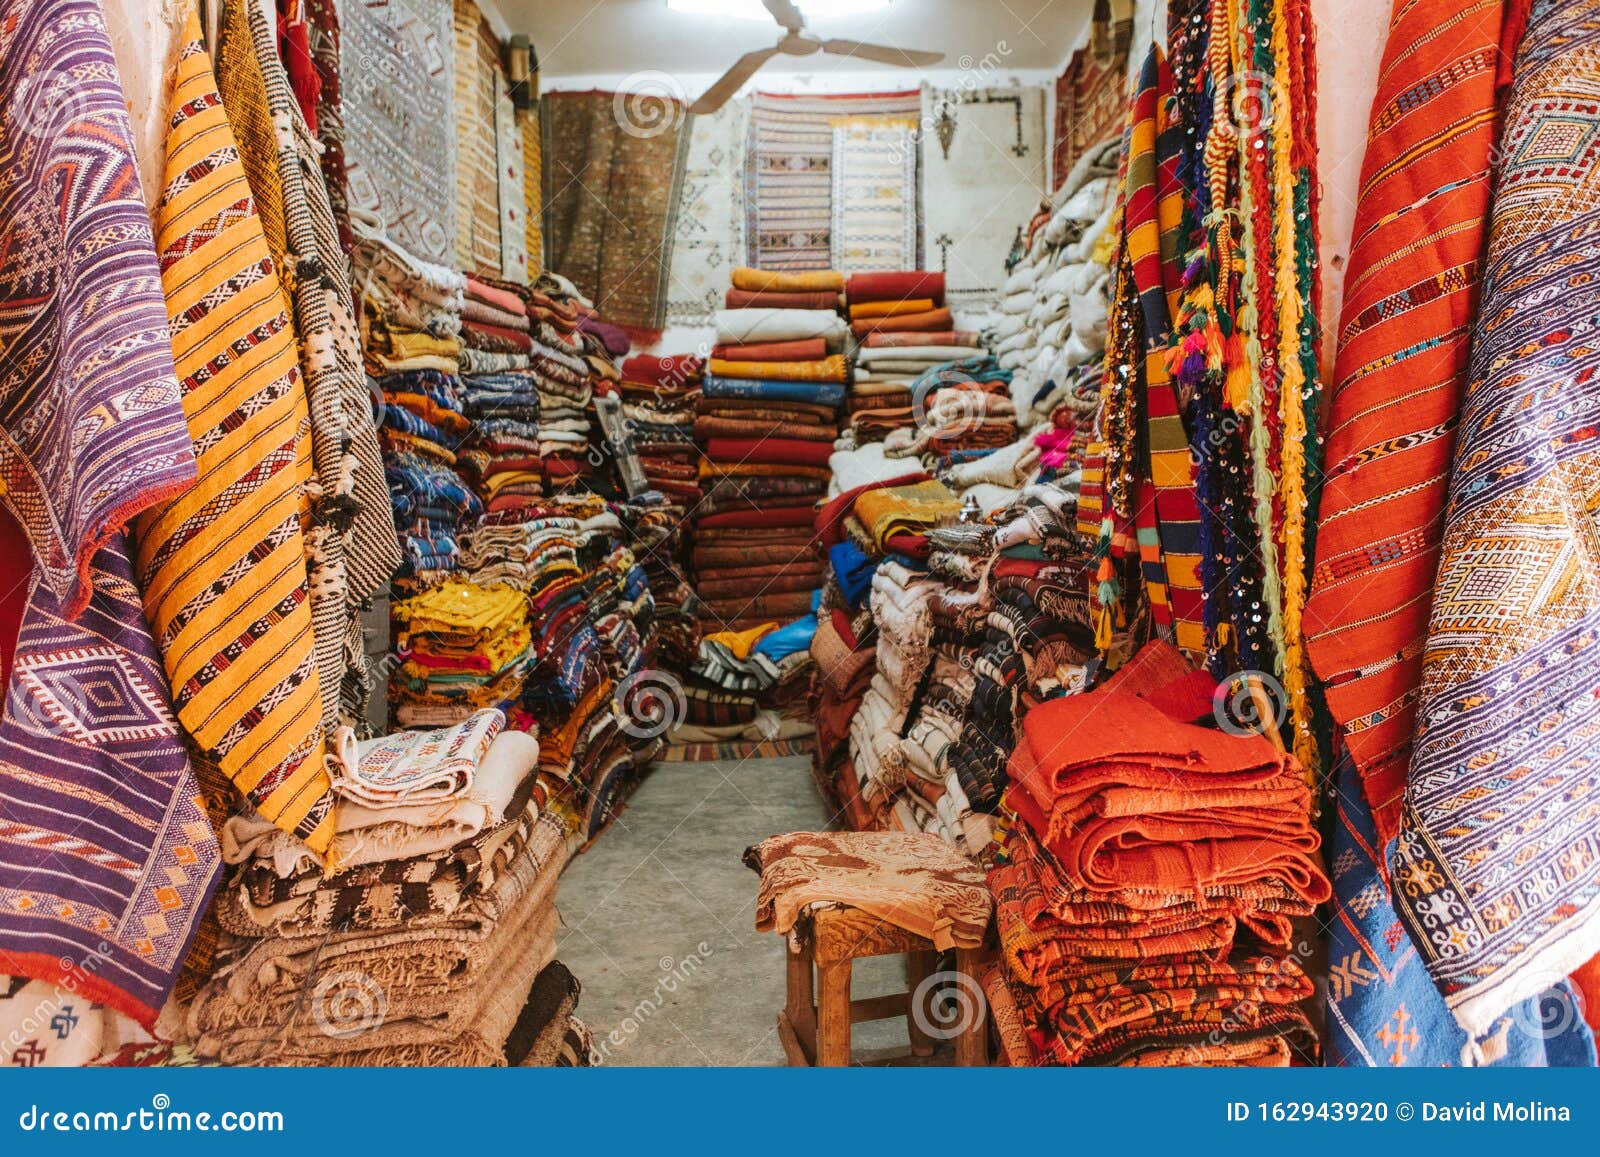 Boutique Textile Sur Un Marché Marocain Photo stock Image